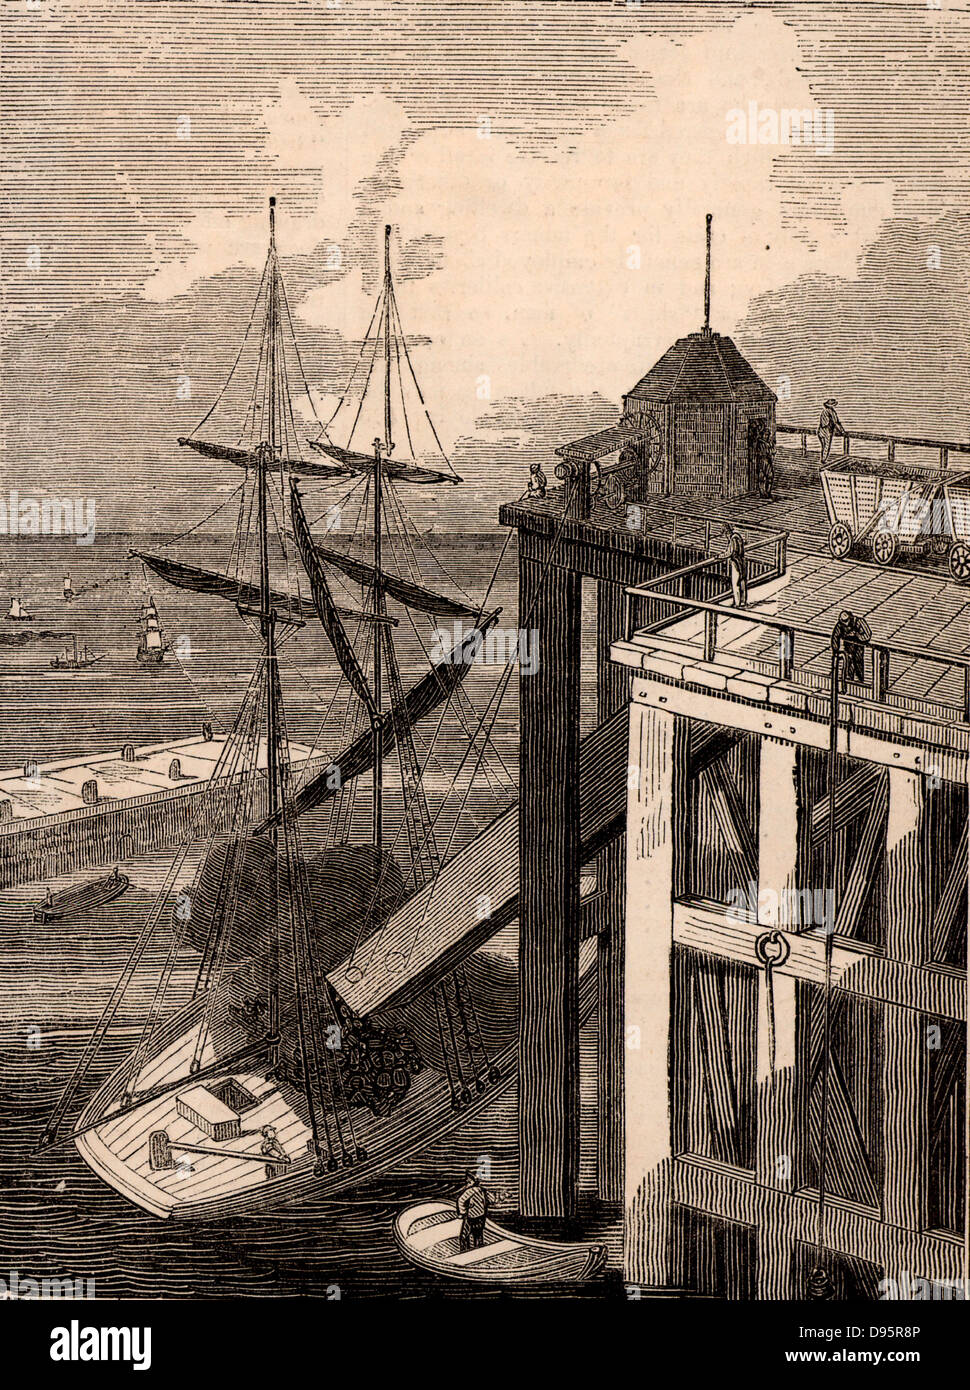 Seaham Harbour, comté de Durham, Angleterre. Chargement d'un navire à voile avec le charbon. Les wagons ont été déchargées dans le haut de la "pout' sur l'staithe ou quai. La partie inférieure du bec a été positionné sur la cale du navire. Seaham Harbour et la nouvelle ville a été fondée en 1828 à exporter du charbon de l'est de la région de Durham. Gravure tirée de "le Penny Magazine' (Londres, avril 1835). Banque D'Images